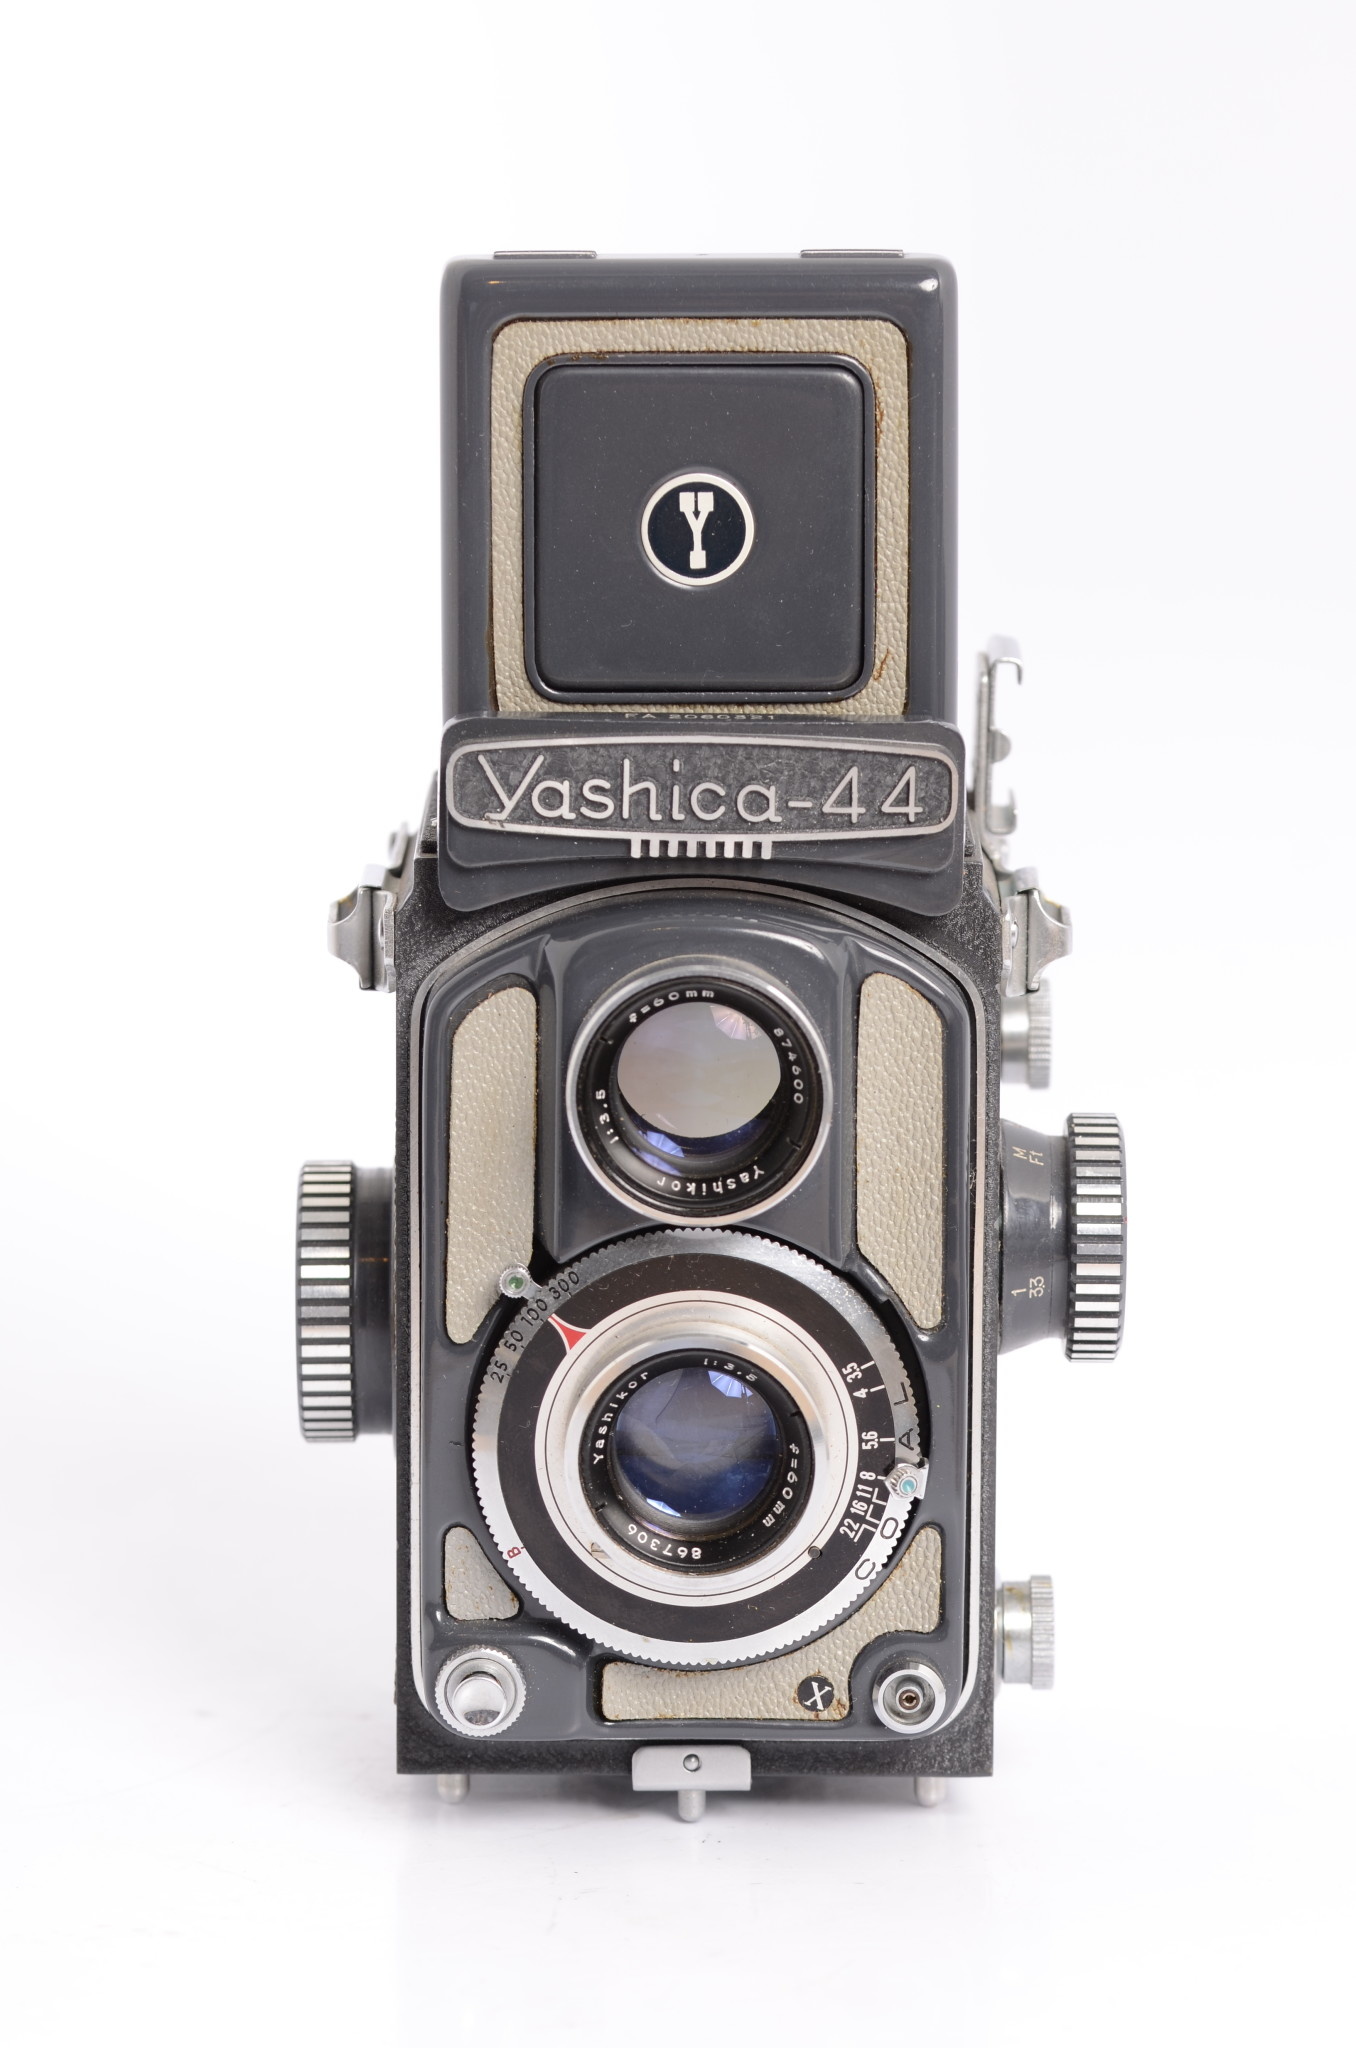 Yashica Yashica 44 Film Camera